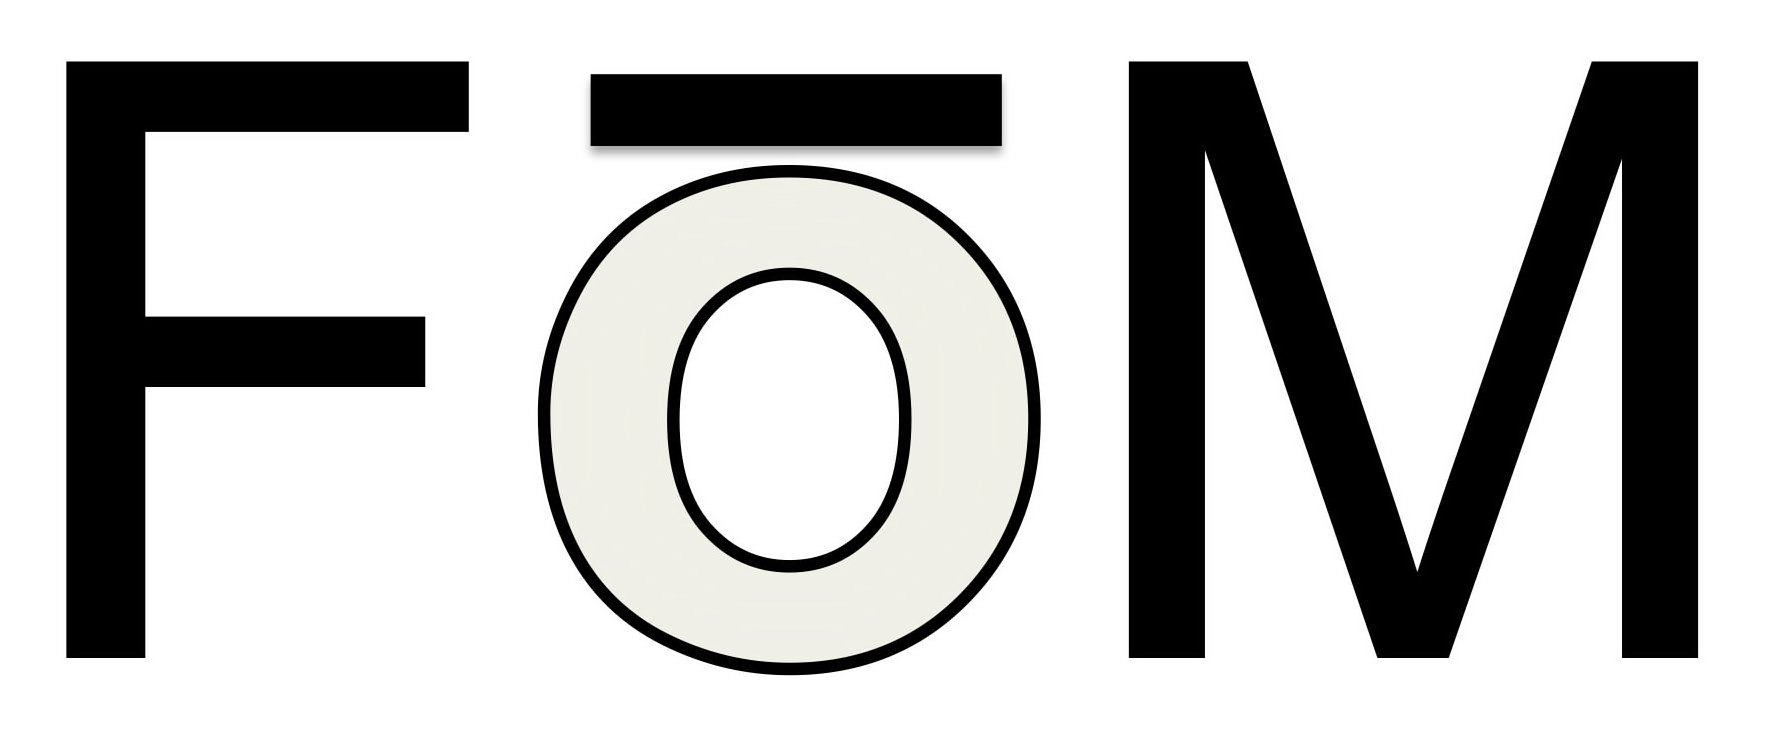 Trademark Logo FOM